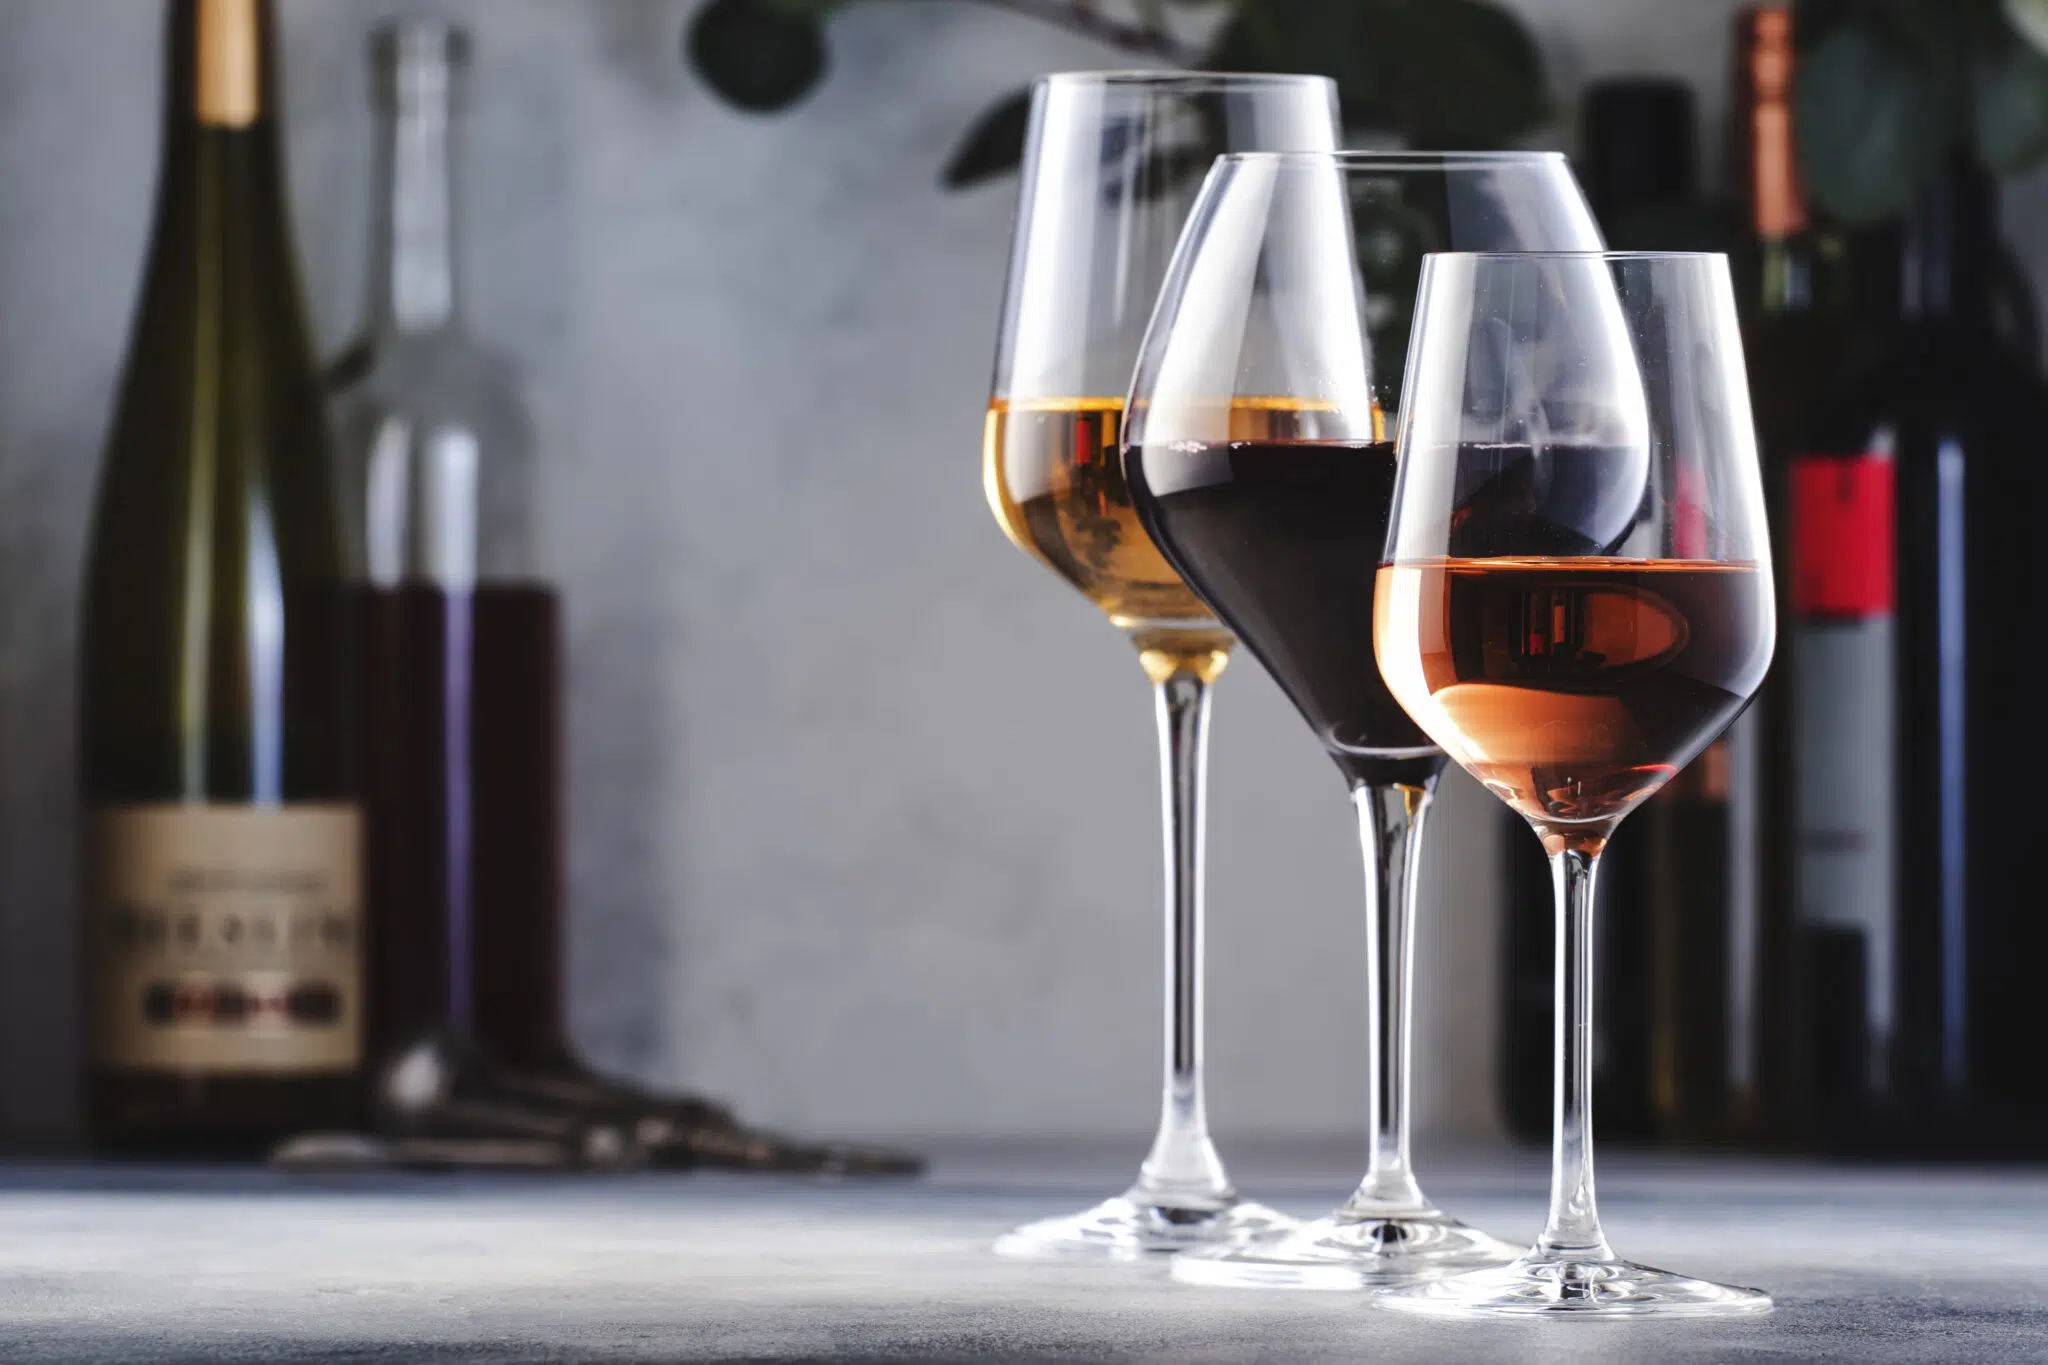 Aérateur de Vin de Luxe avec Support pour Vin de Luxe Carafe à Vin